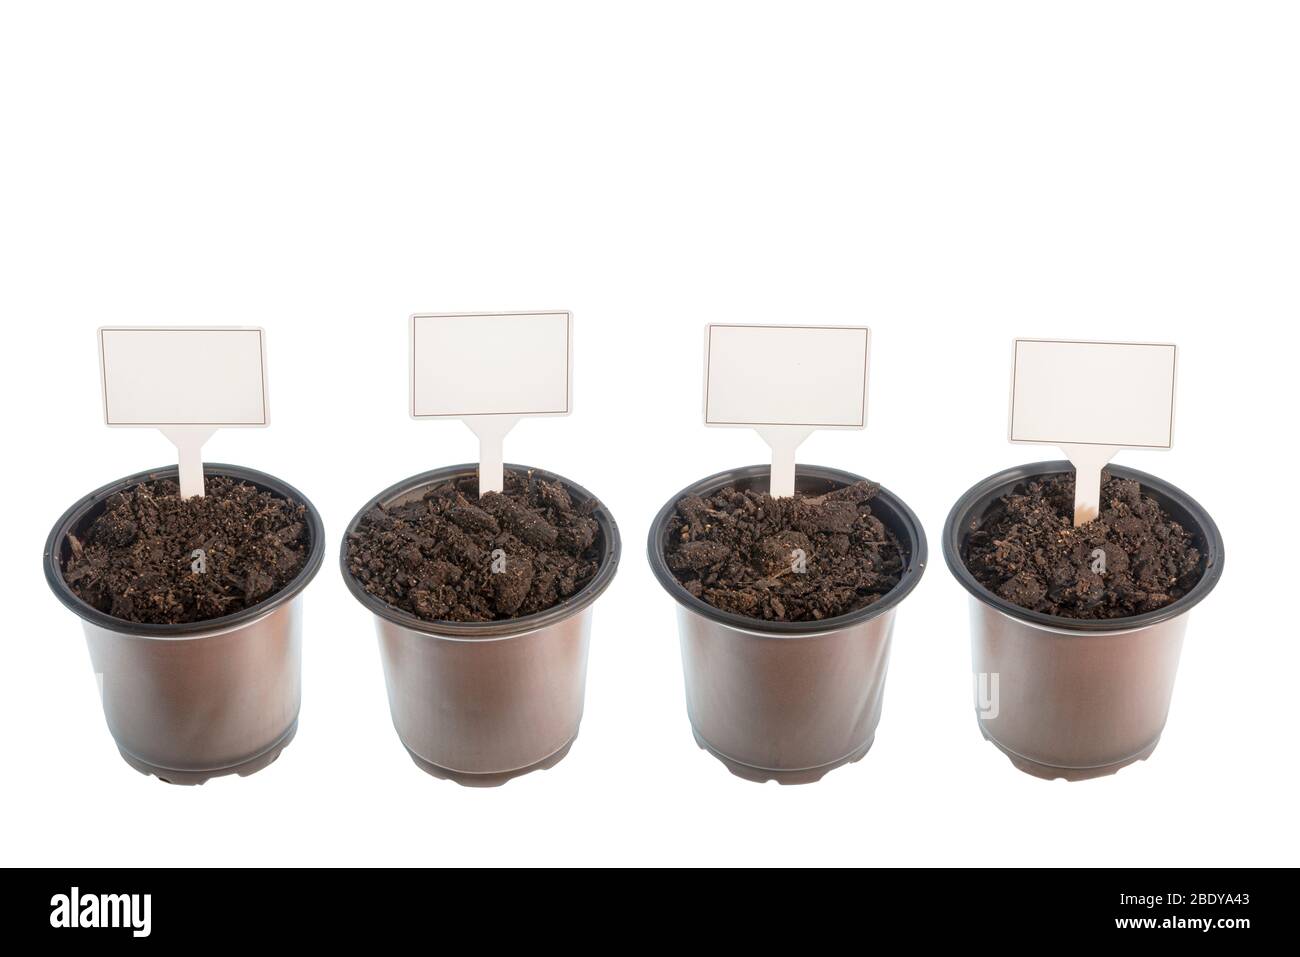 Tir horizontal de quatre récipients de potage prêts pour les graines avec des signes vierges. Fond blanc. Banque D'Images